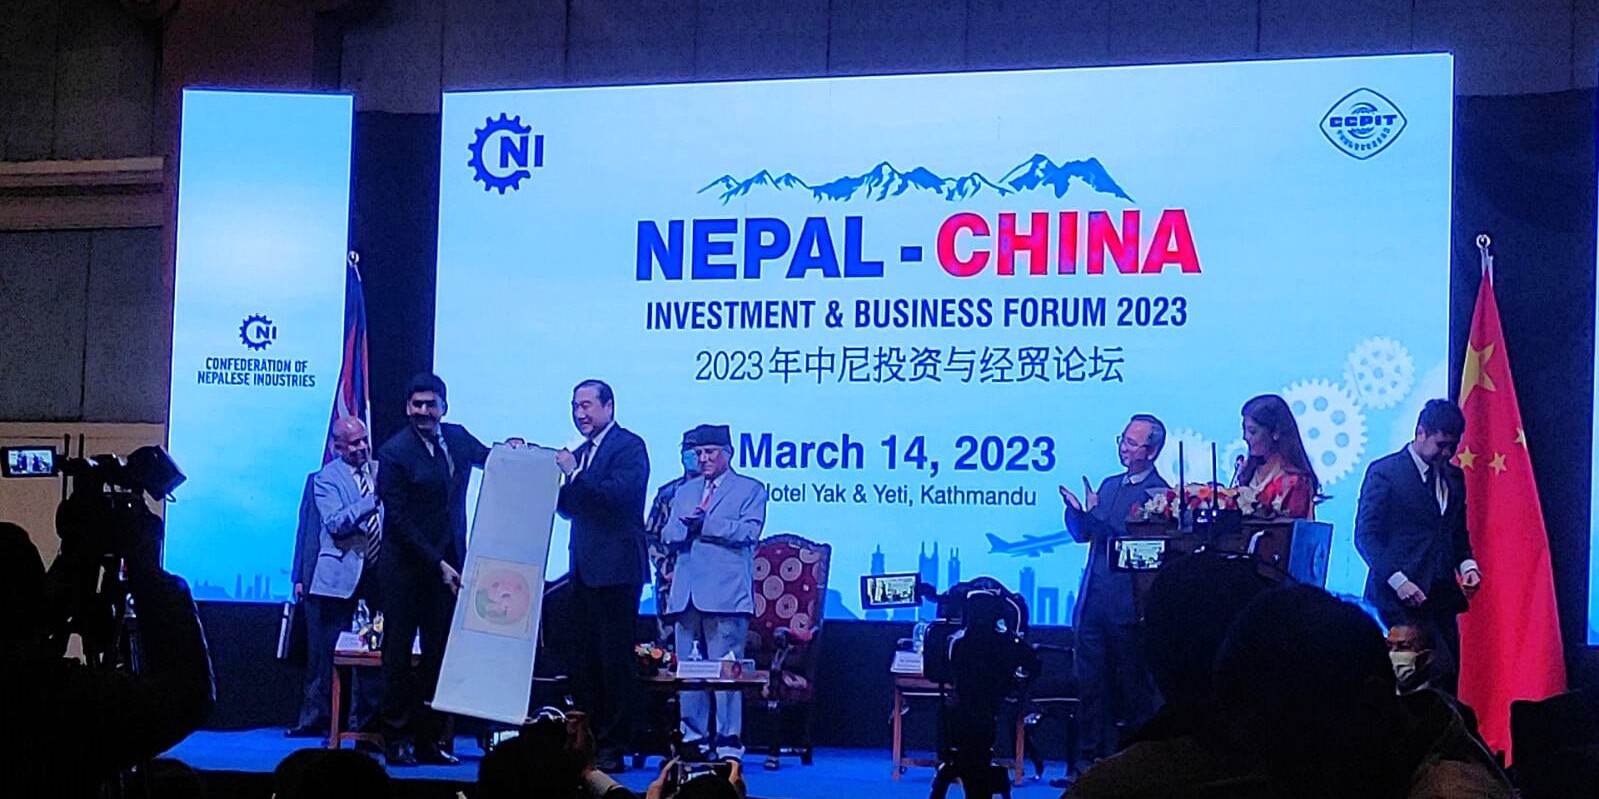 नेपाल उद्योग परिसंघको पहलमा नेपाल–चीन लगानी तथा विजनेस सम्मेलन आयोजना